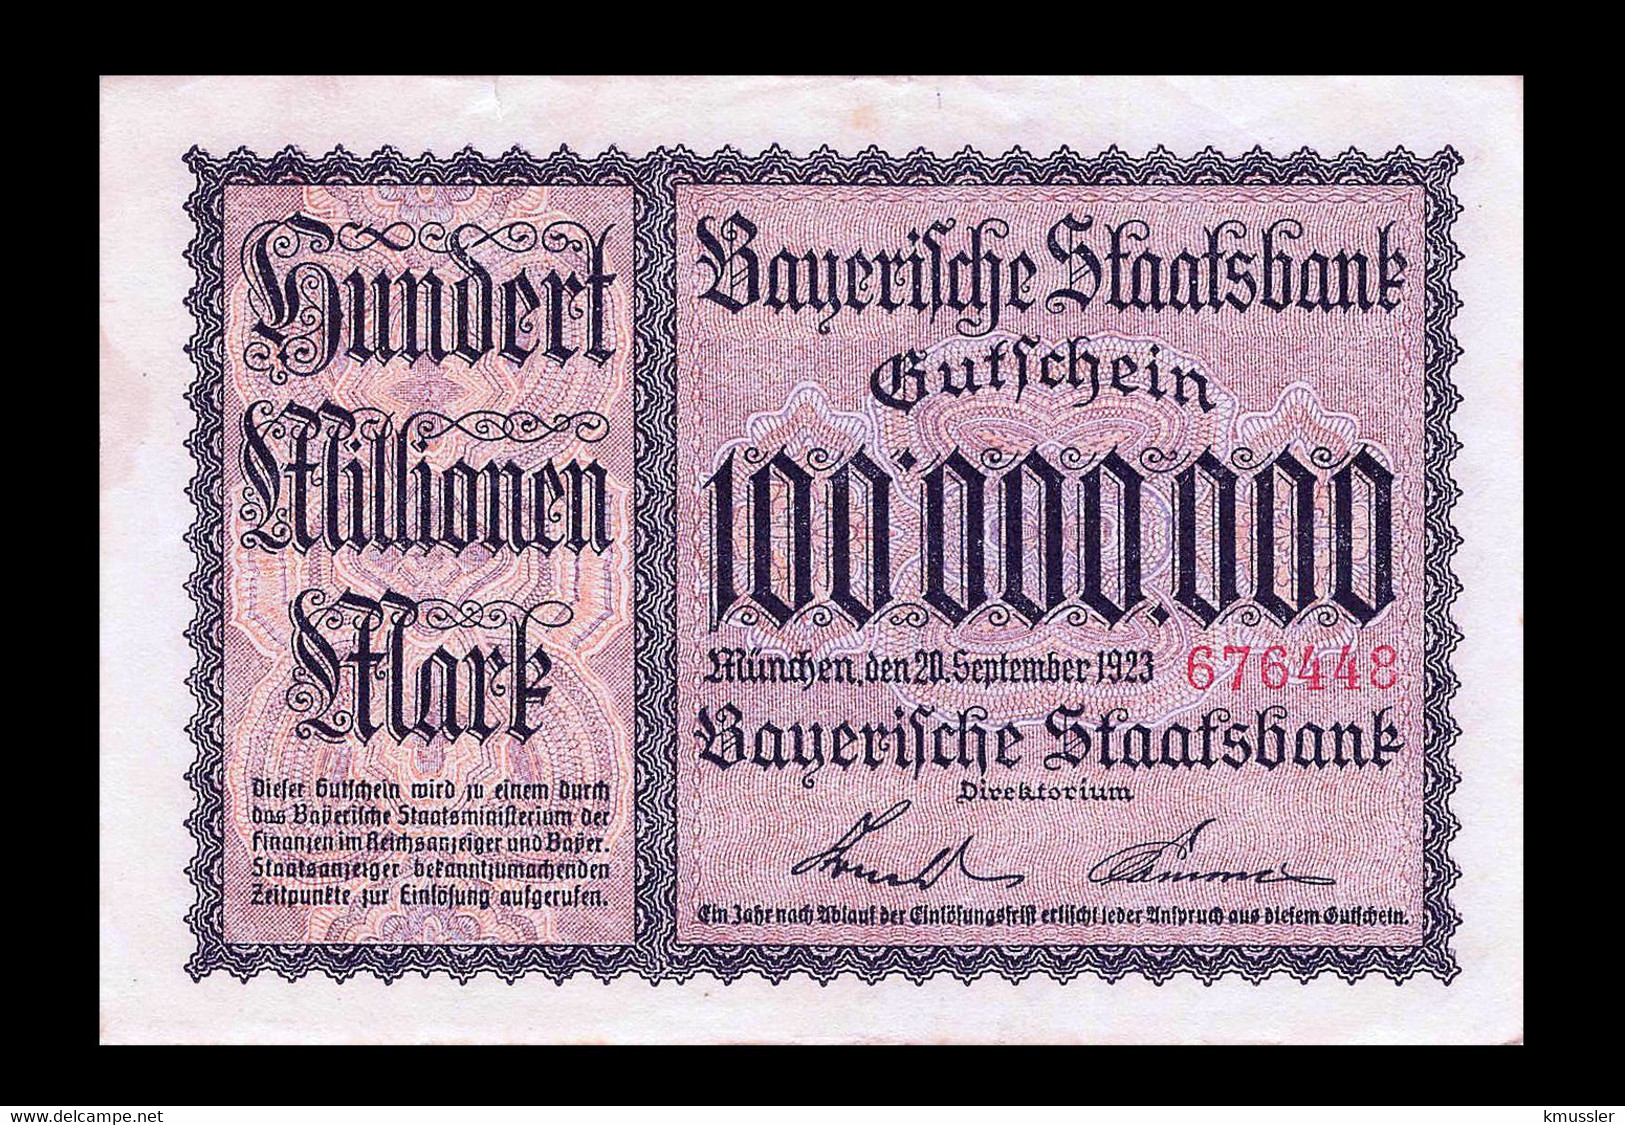 # # # Banknote Bayerische Staatsbank 100.000.000 Mark 1923 UNC # # # - Ohne Zuordnung